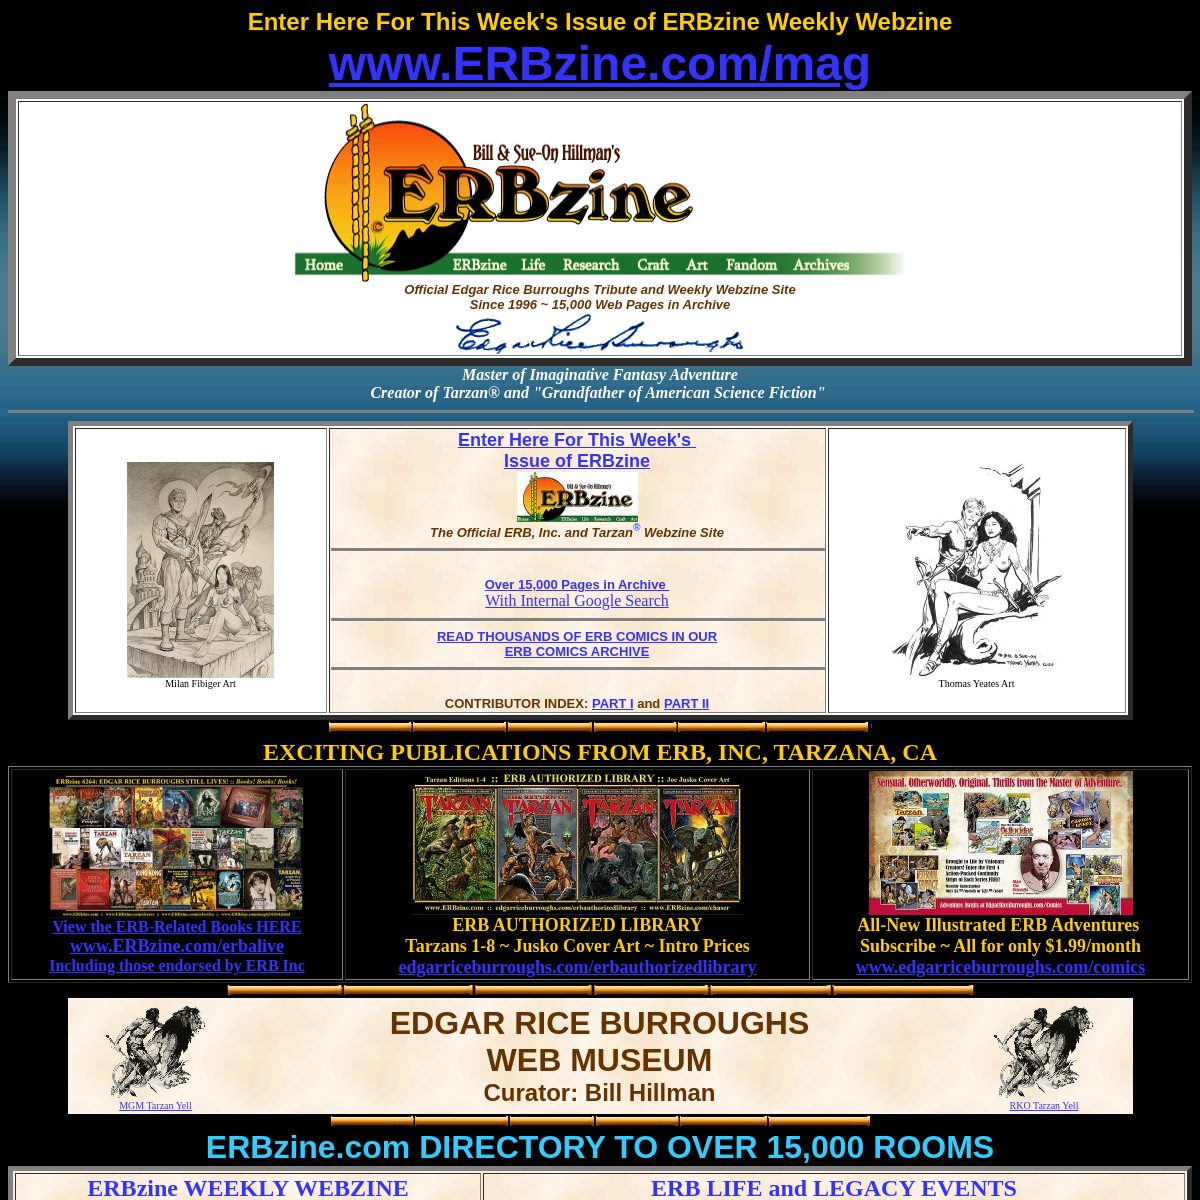 A complete backup of erbzine.com